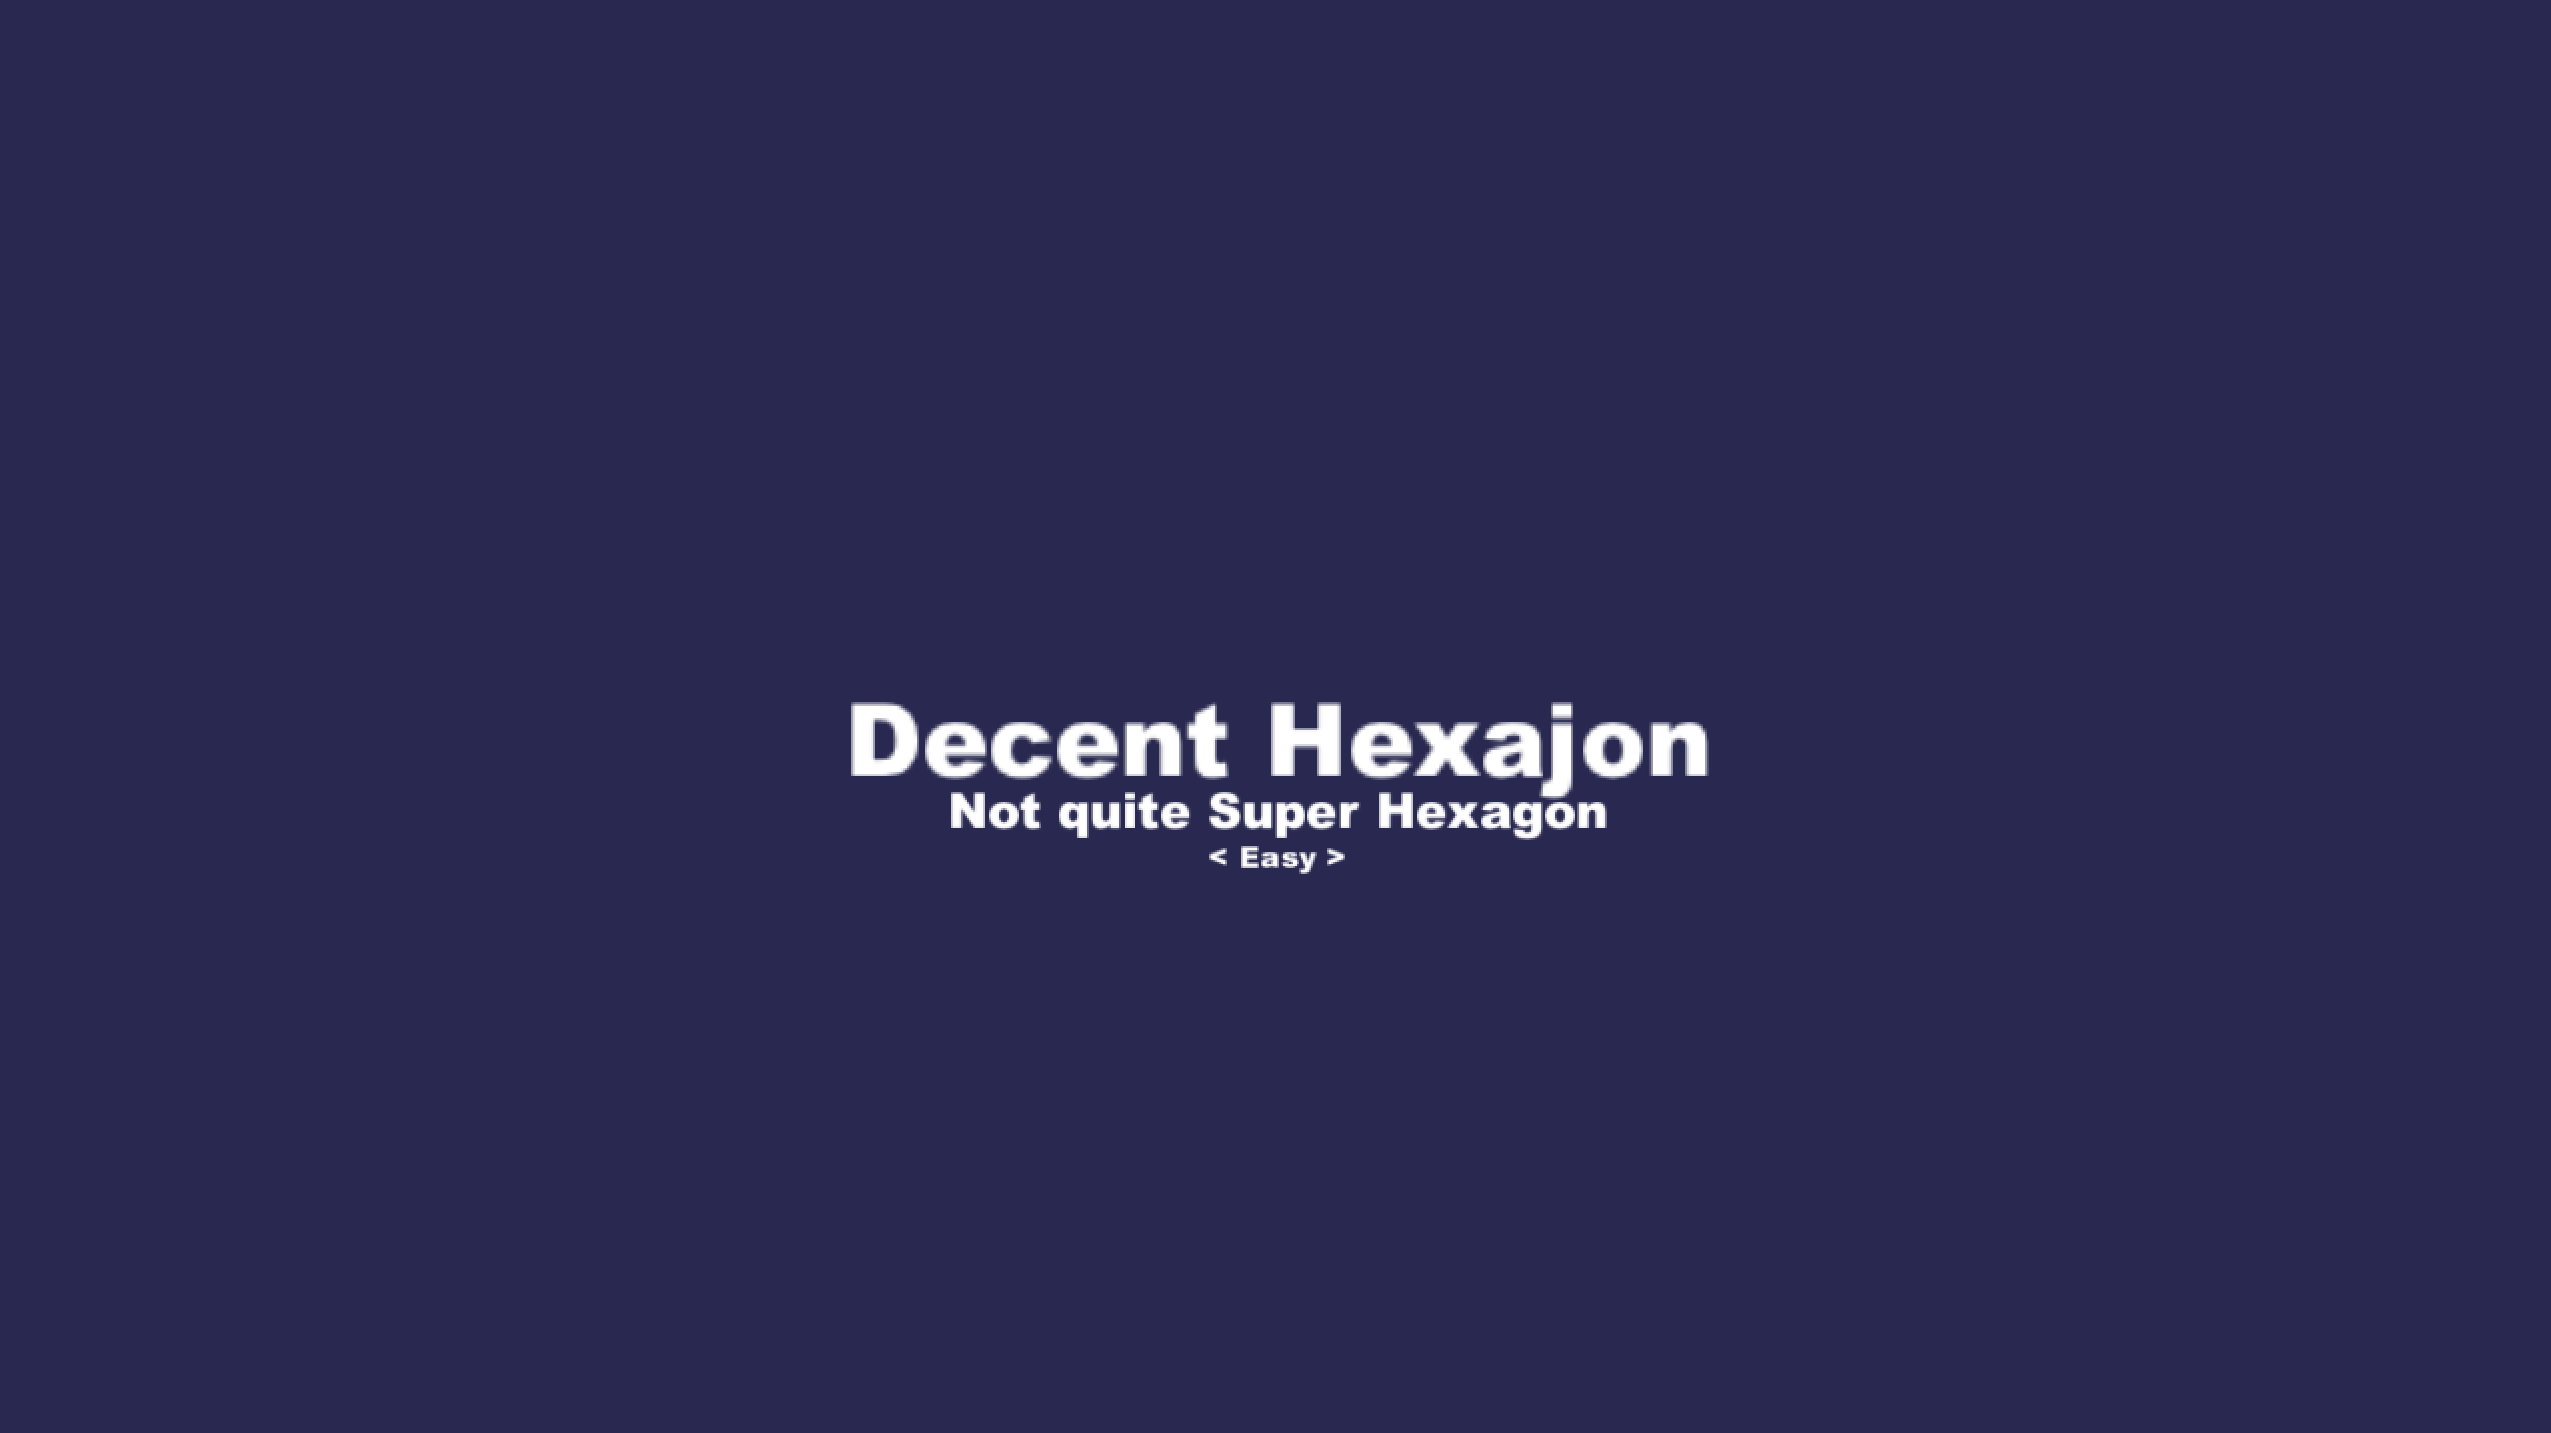 Decent Hexajon... Not Quite Super Hexagon